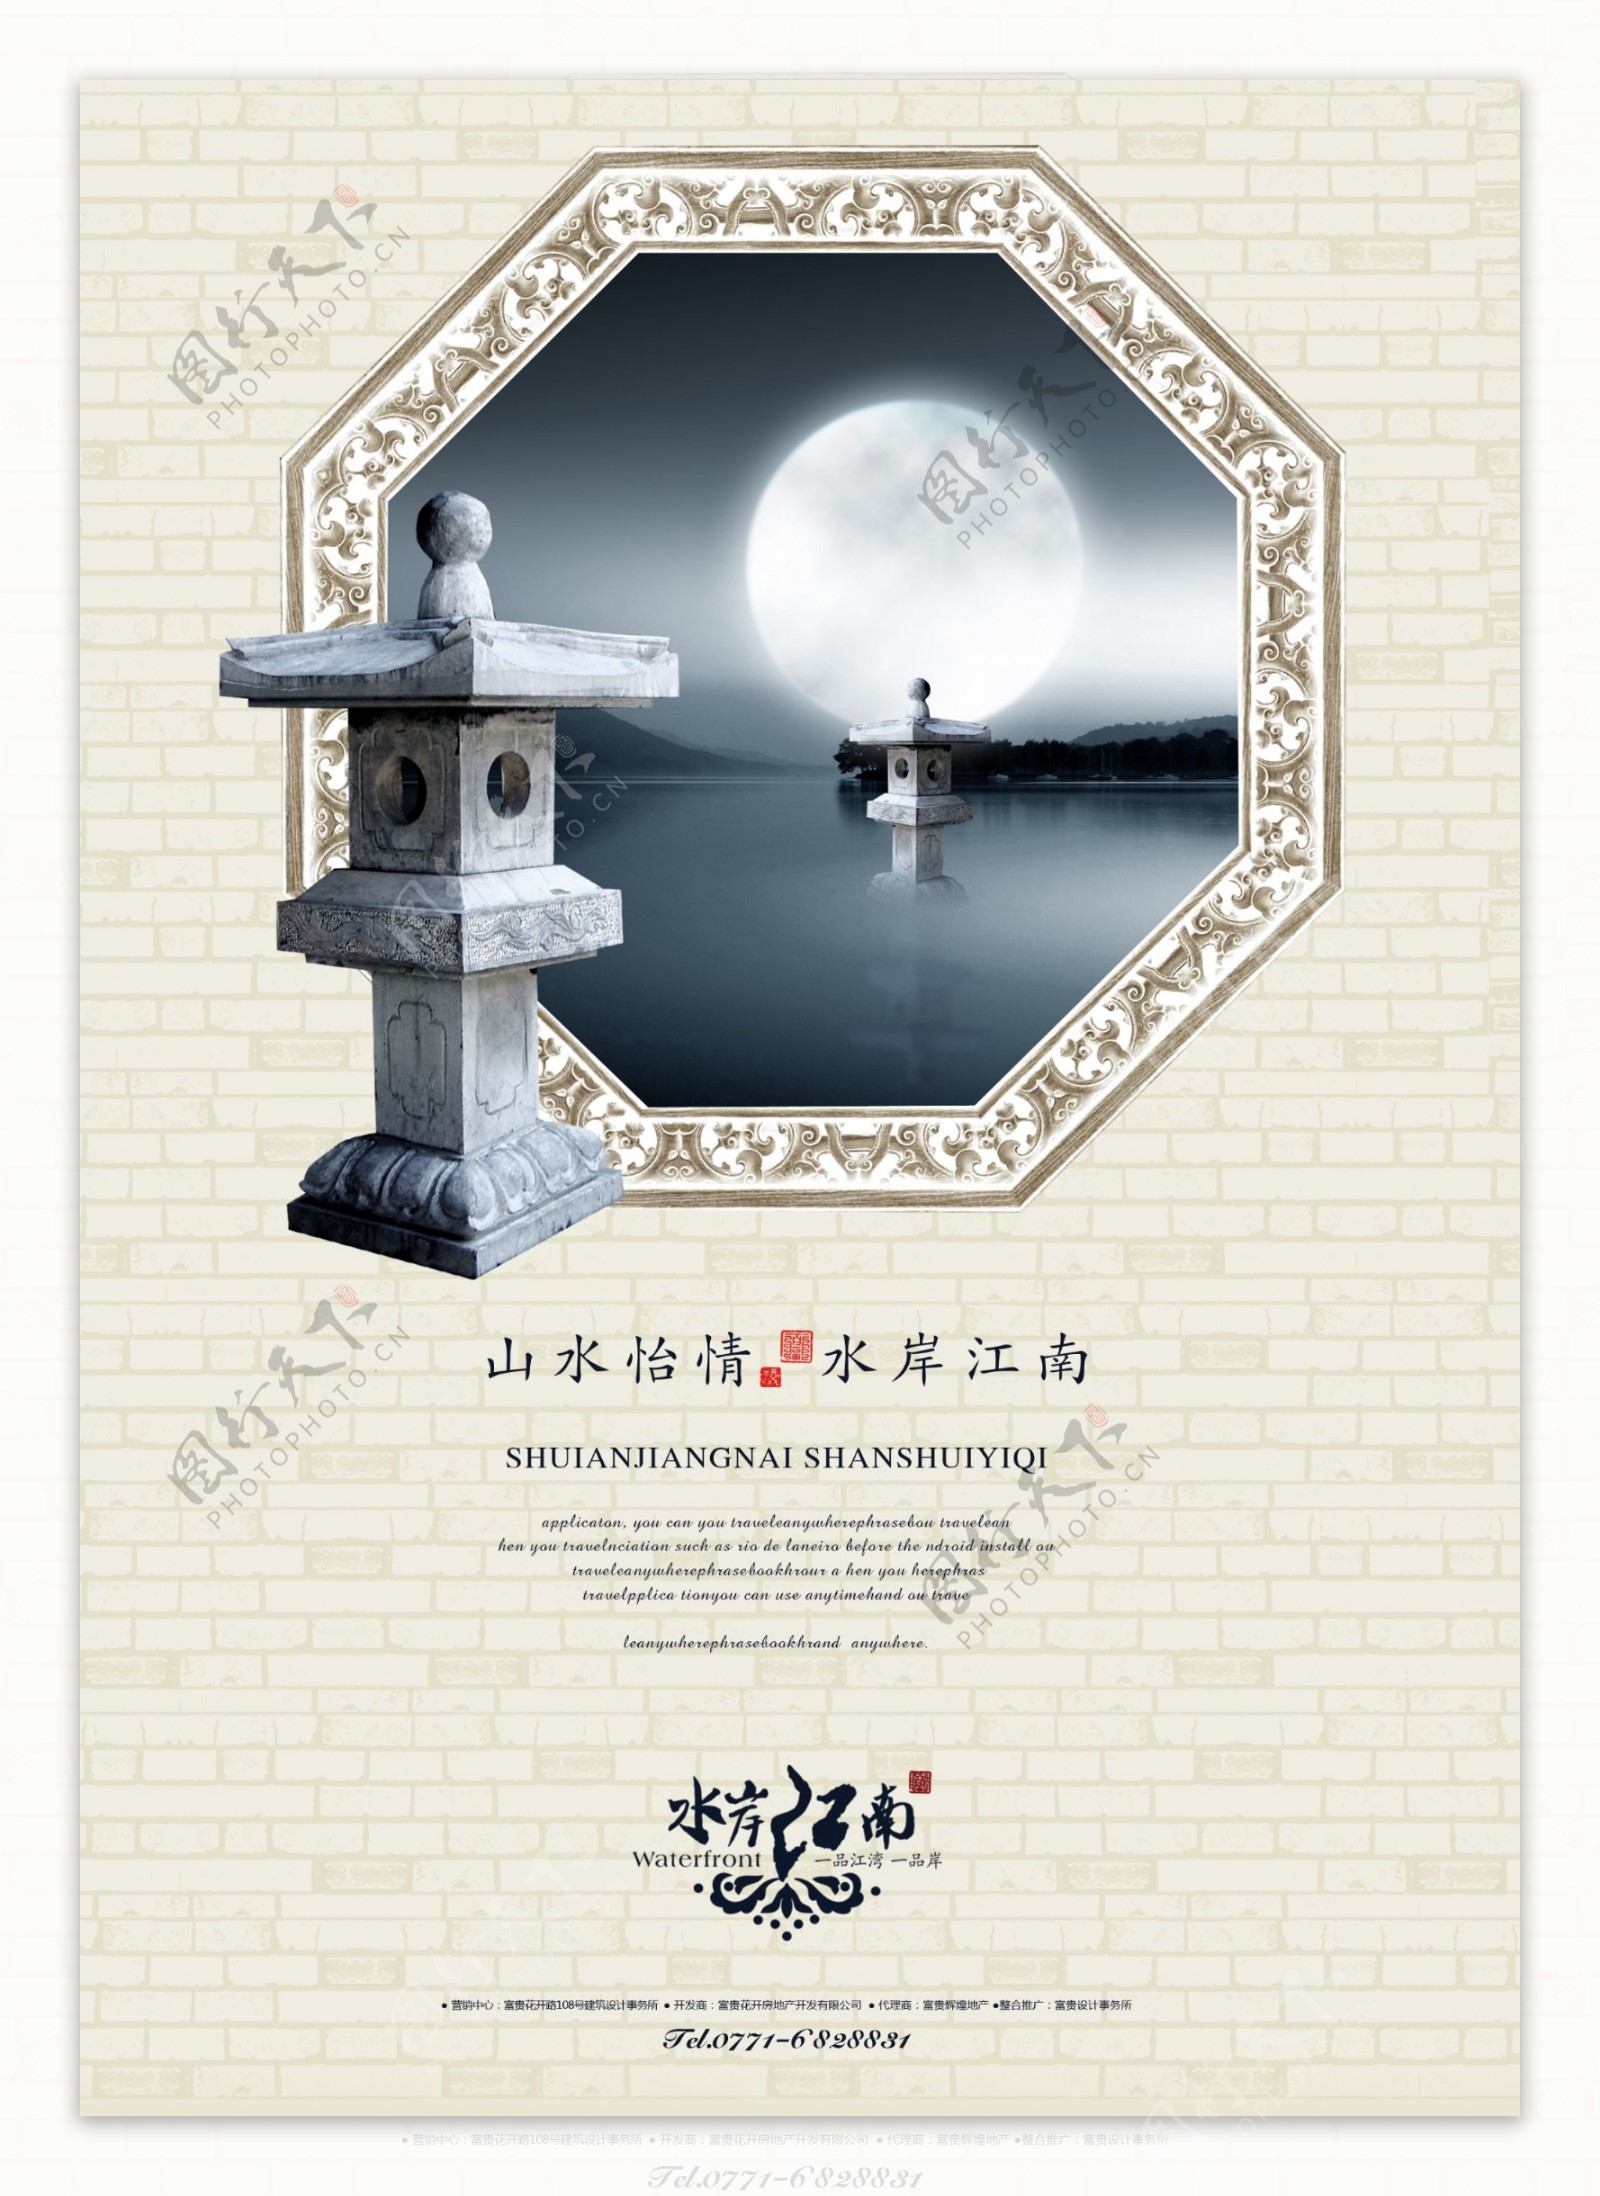 中国风房产广告PSD设计